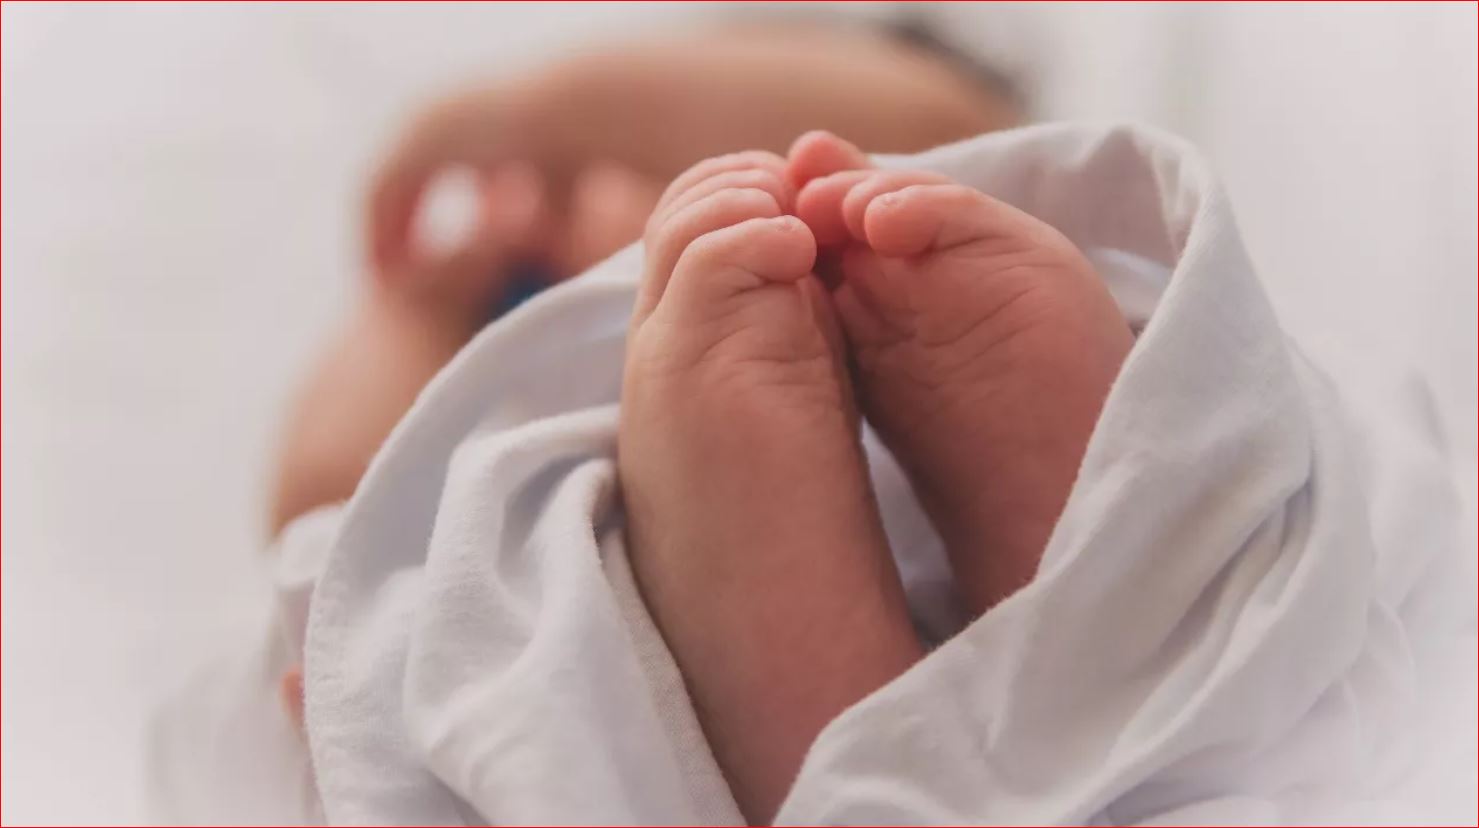 Κορονοϊός: Γεννήθηκε το δεύτερο μωρό από μητέρα θετική στον ιό